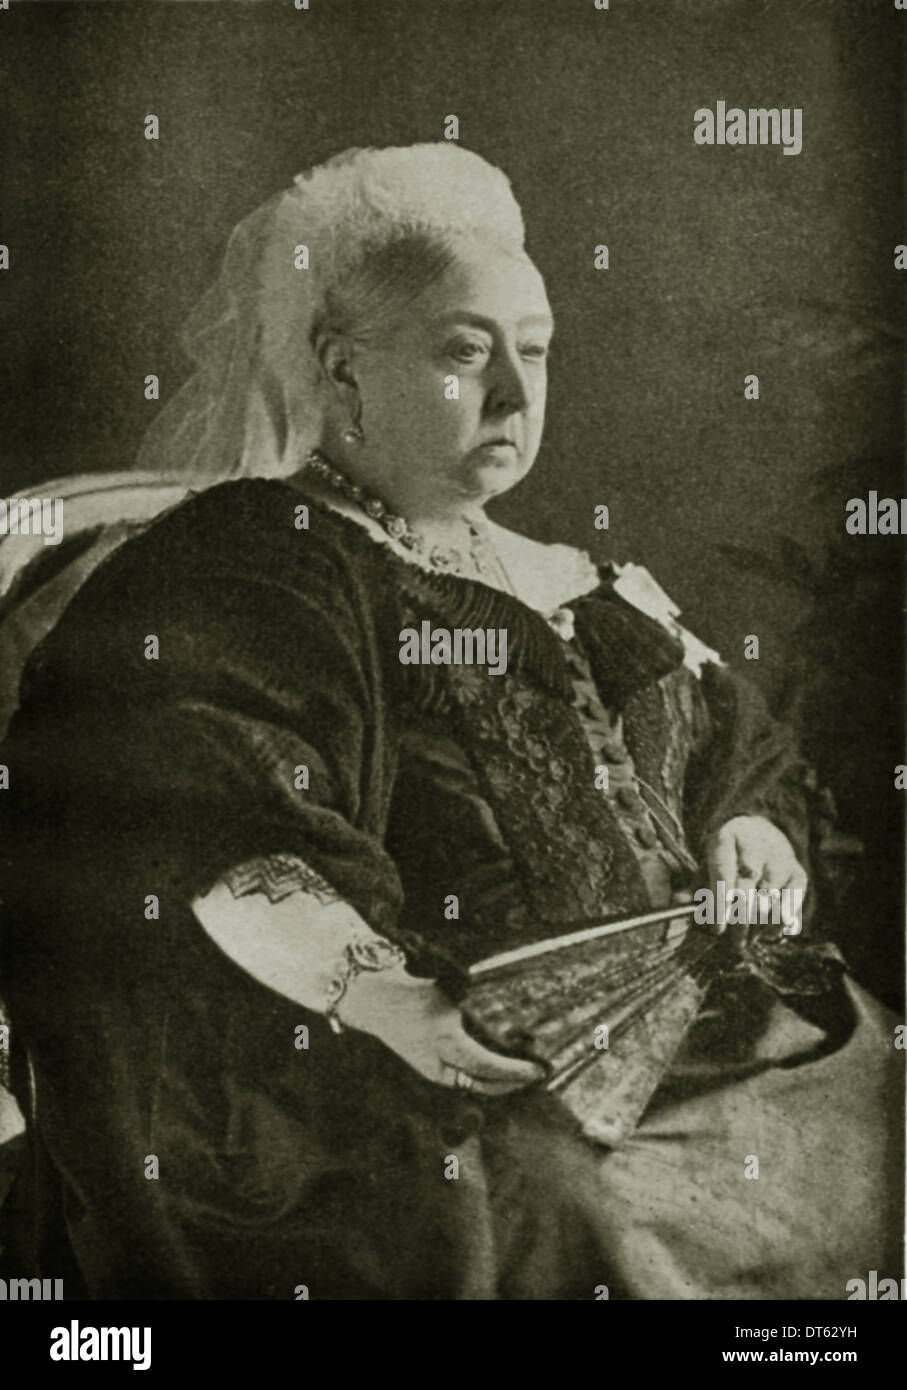 Un retrato de la Reina Victoria en 1897. Imagen de los archivos de prensa Servicio de retrato (vertical) Oficina de Prensa anteriormente Foto de stock